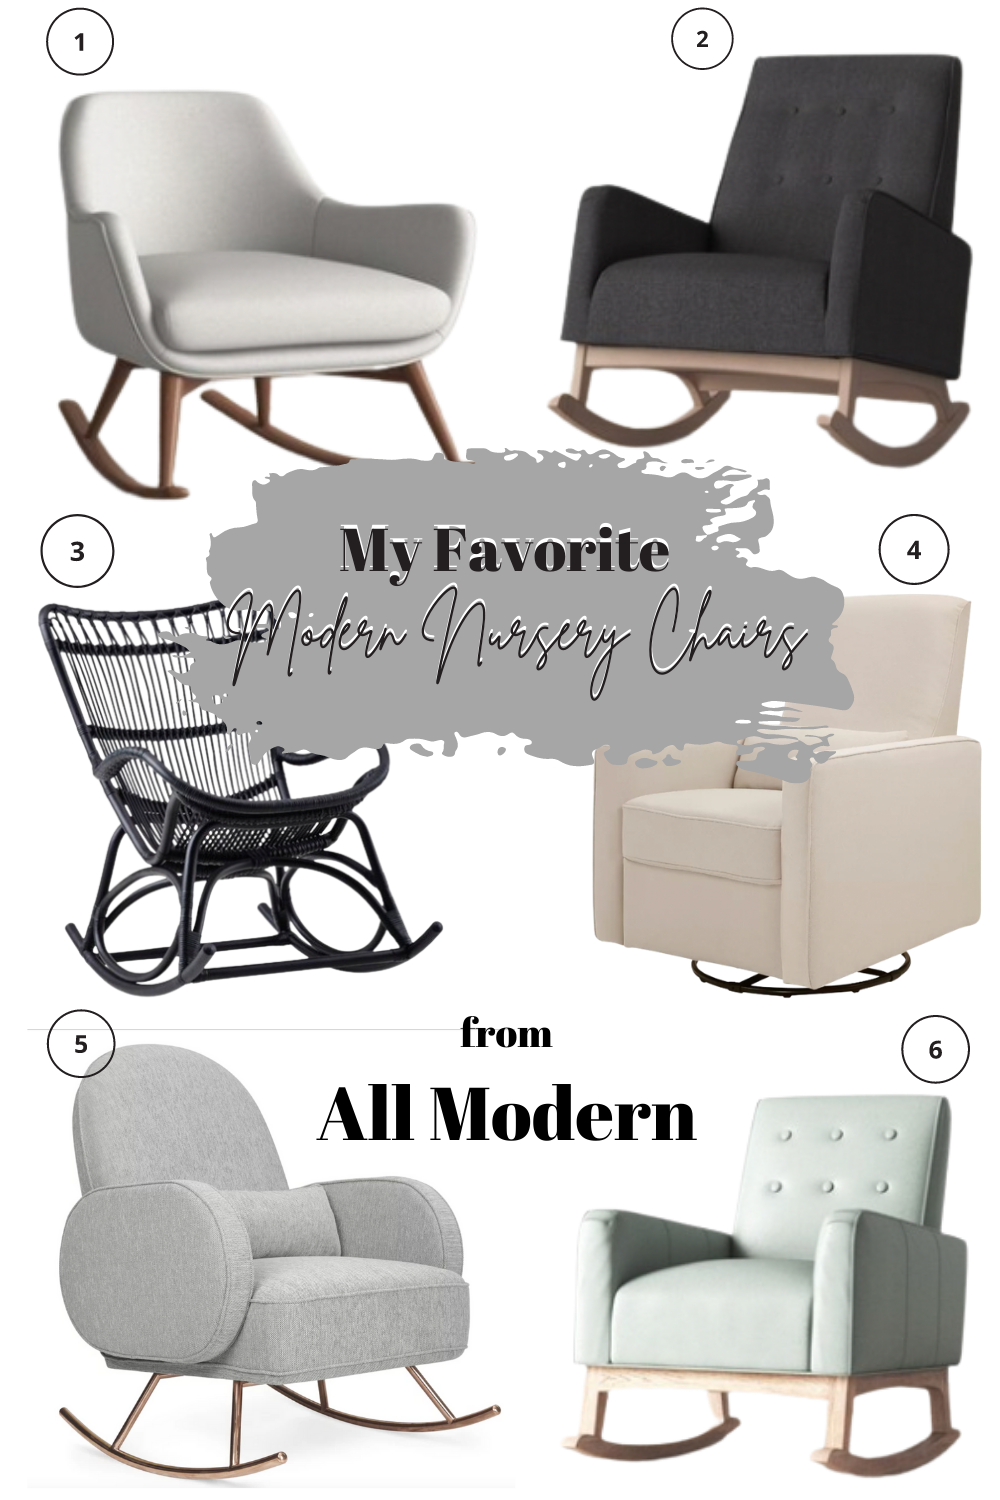 Modern Nursery Chairs From All Modern Jordecor